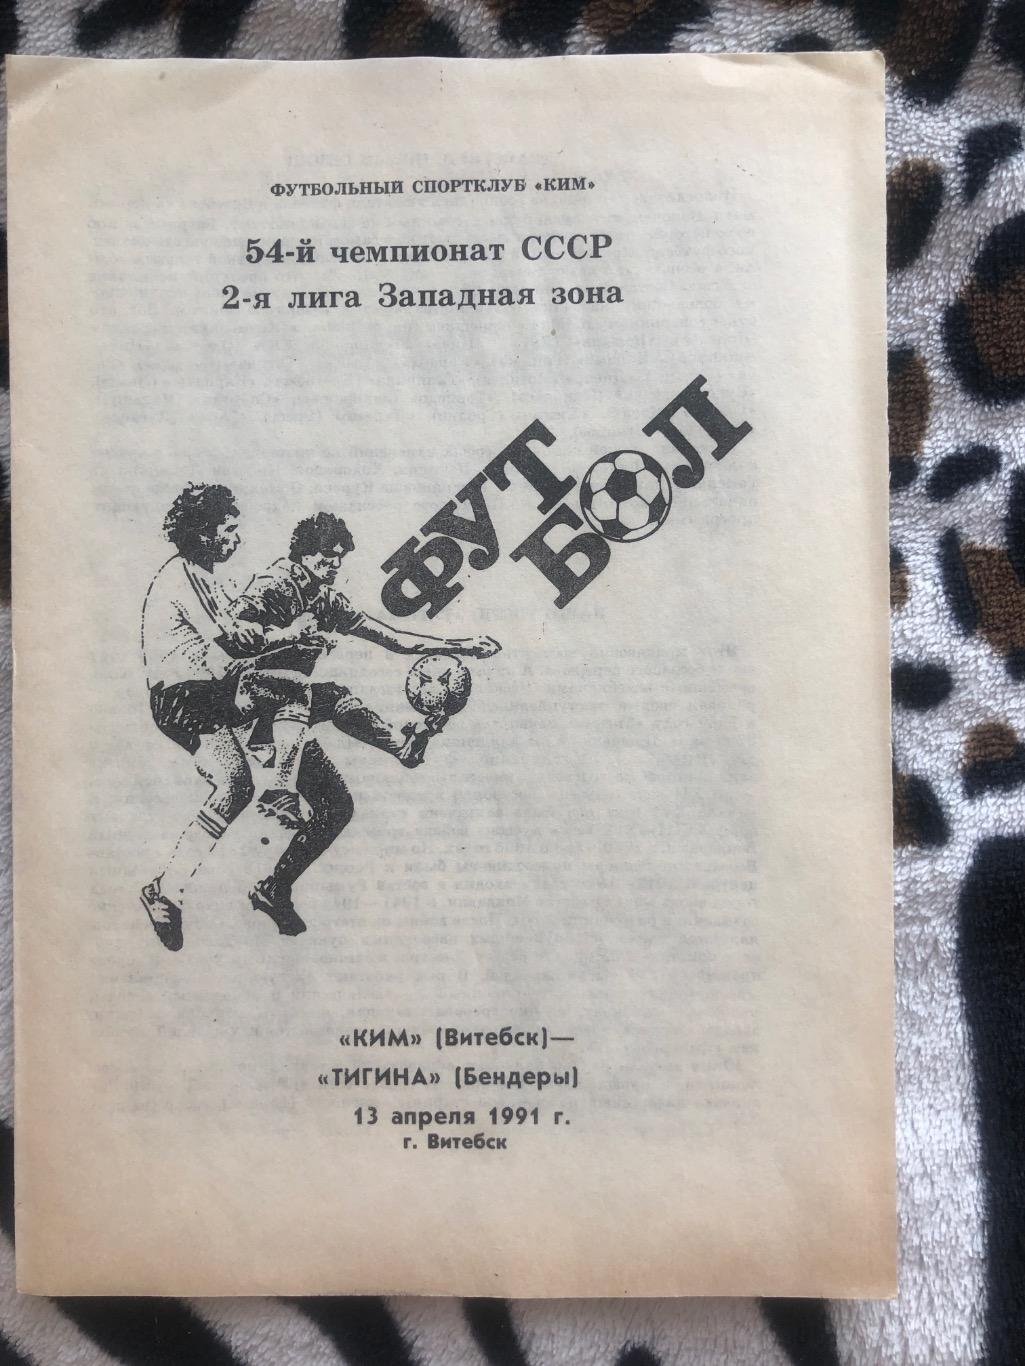 КИМ Витебск - Тигина Бендеры 13 апреля 1991